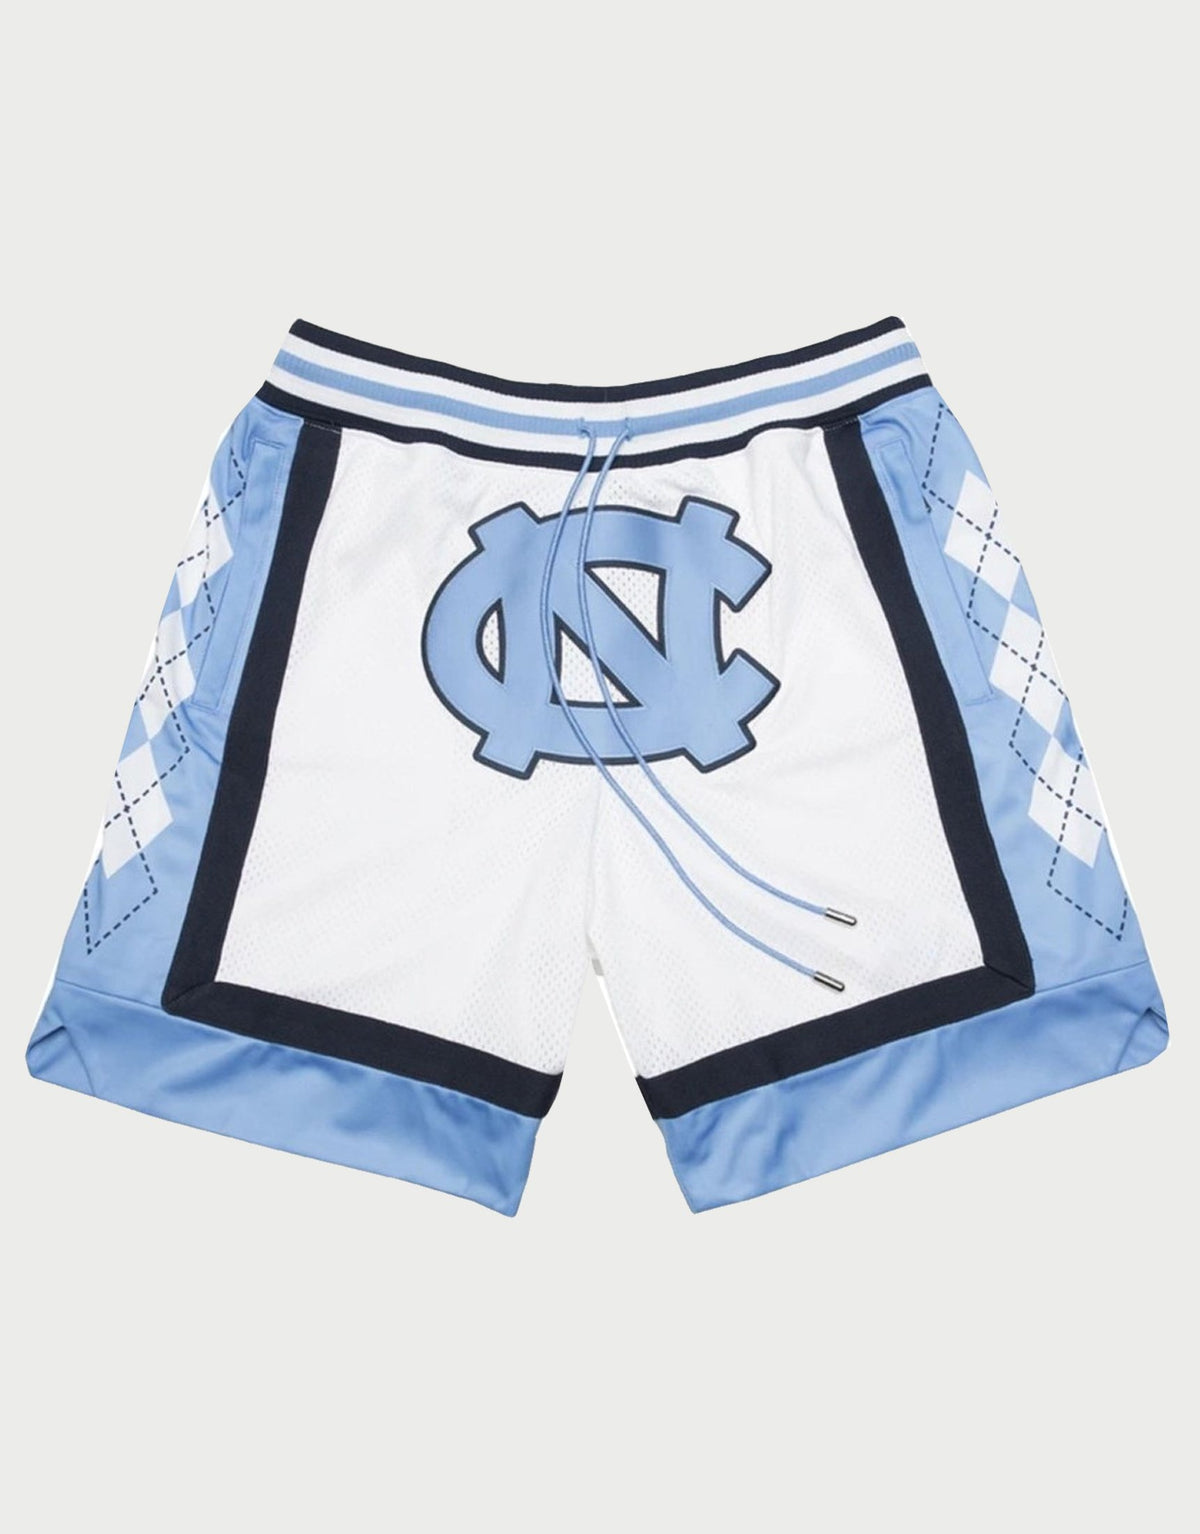 University of North Carolina White Basketball Shorts